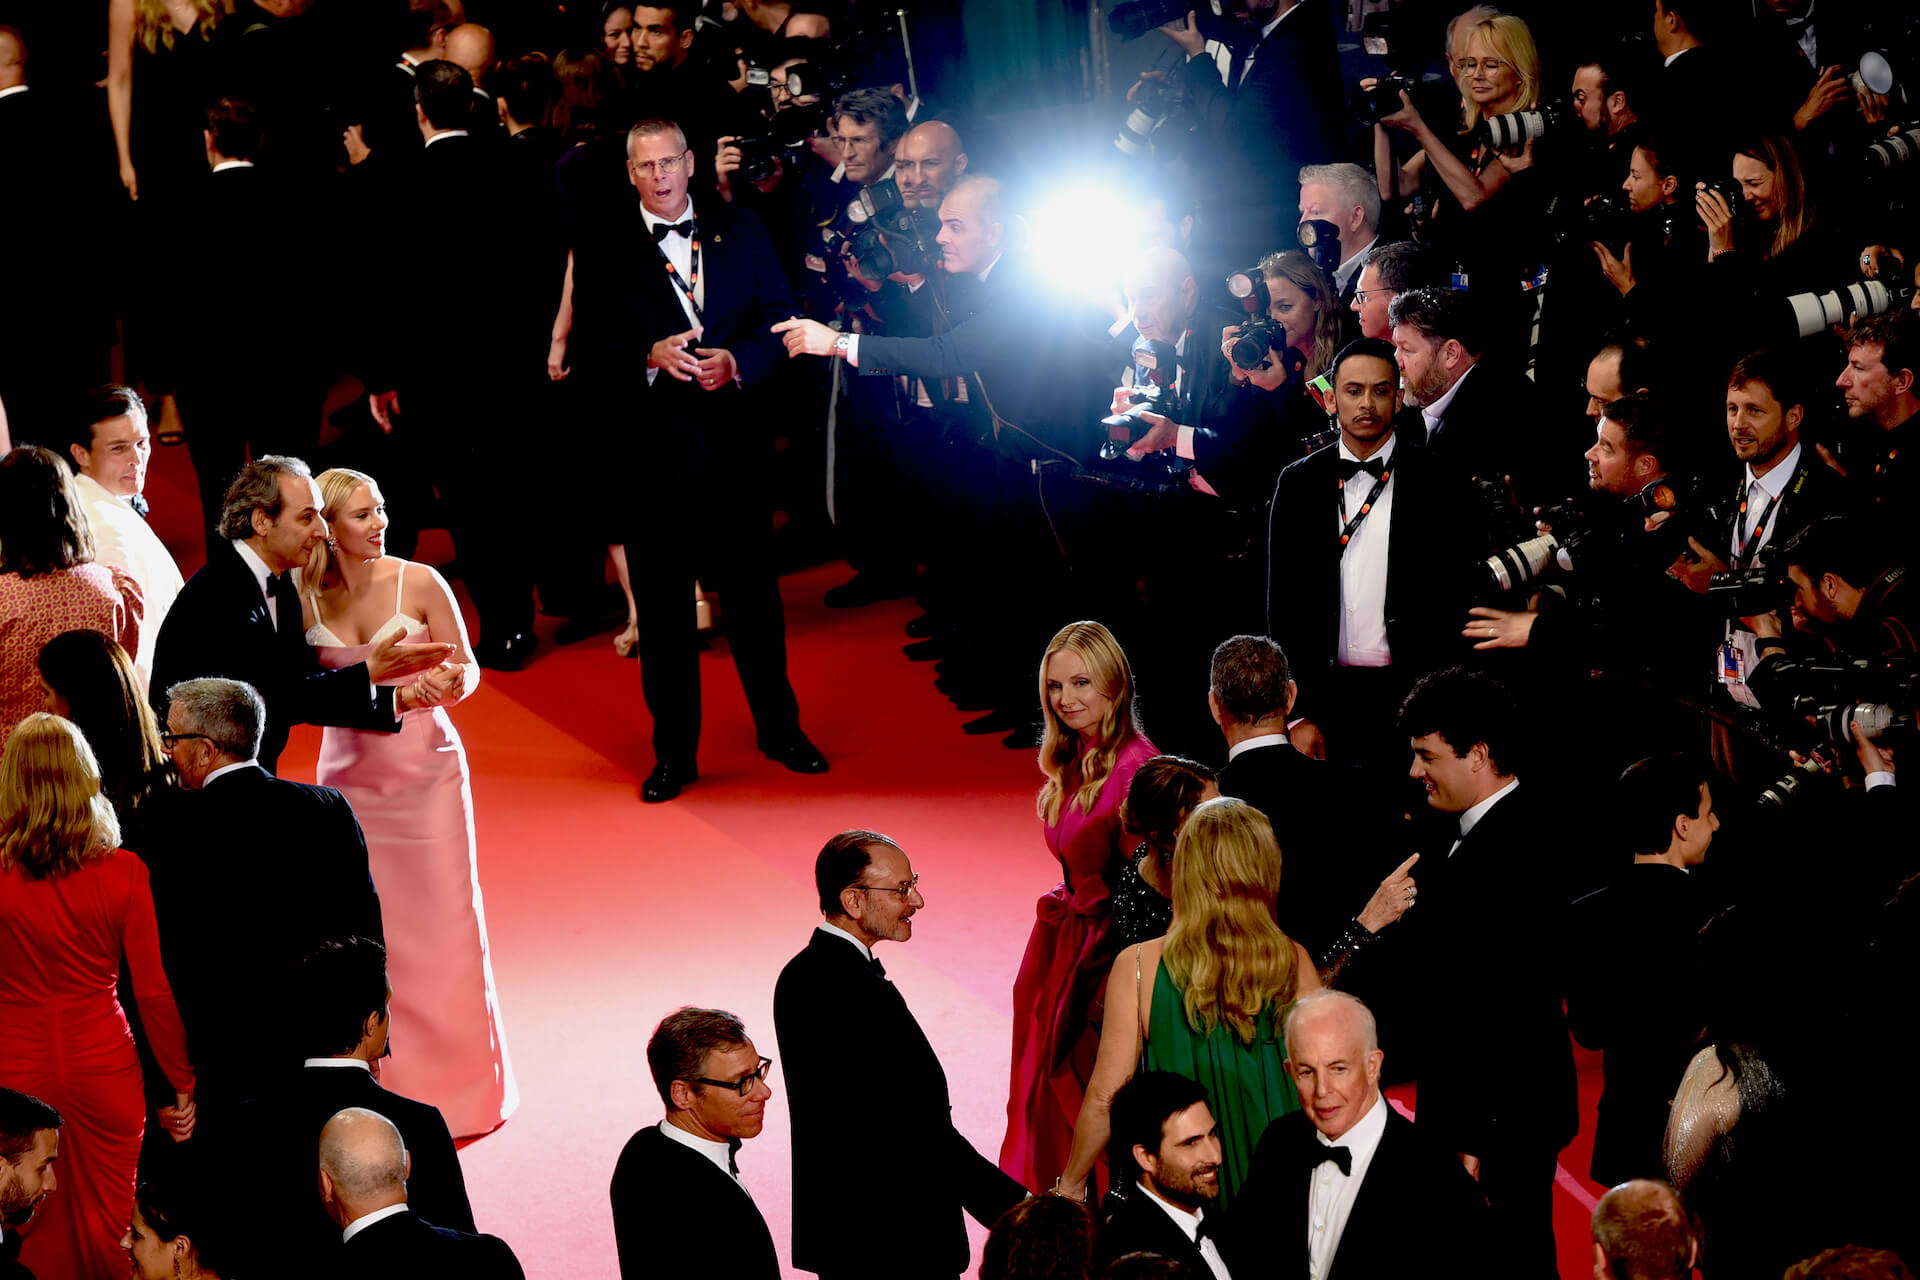 Alexandre Desplat and Scarlett Johansson